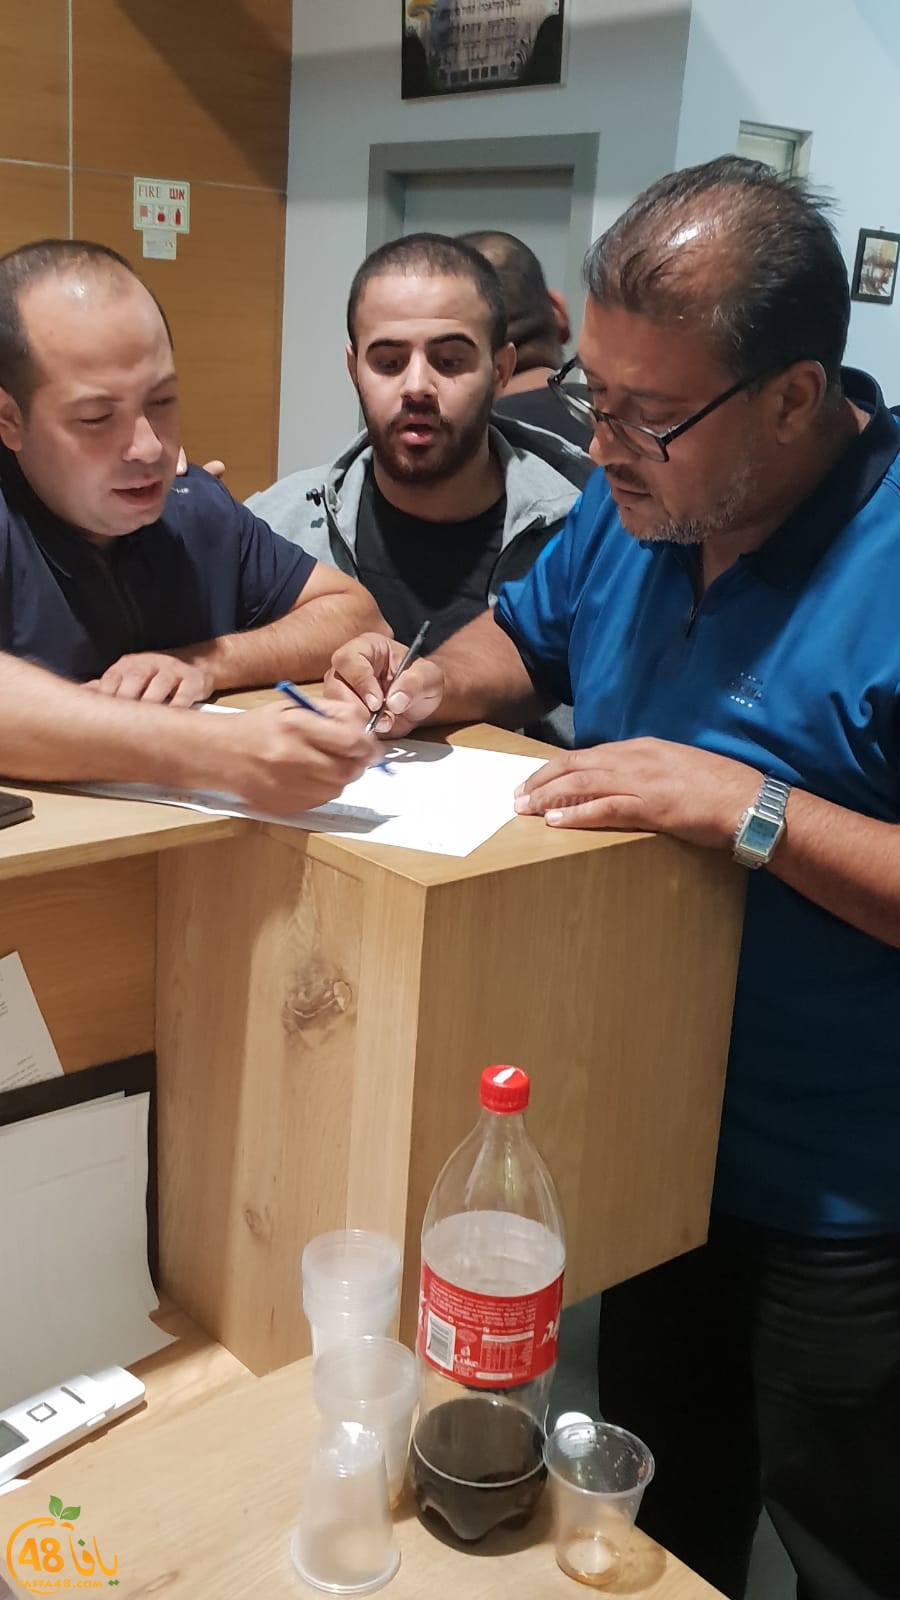  الرملة: عضو البلدية نايف ابو صويص يُنظم حملة للتبرّع بالدم 